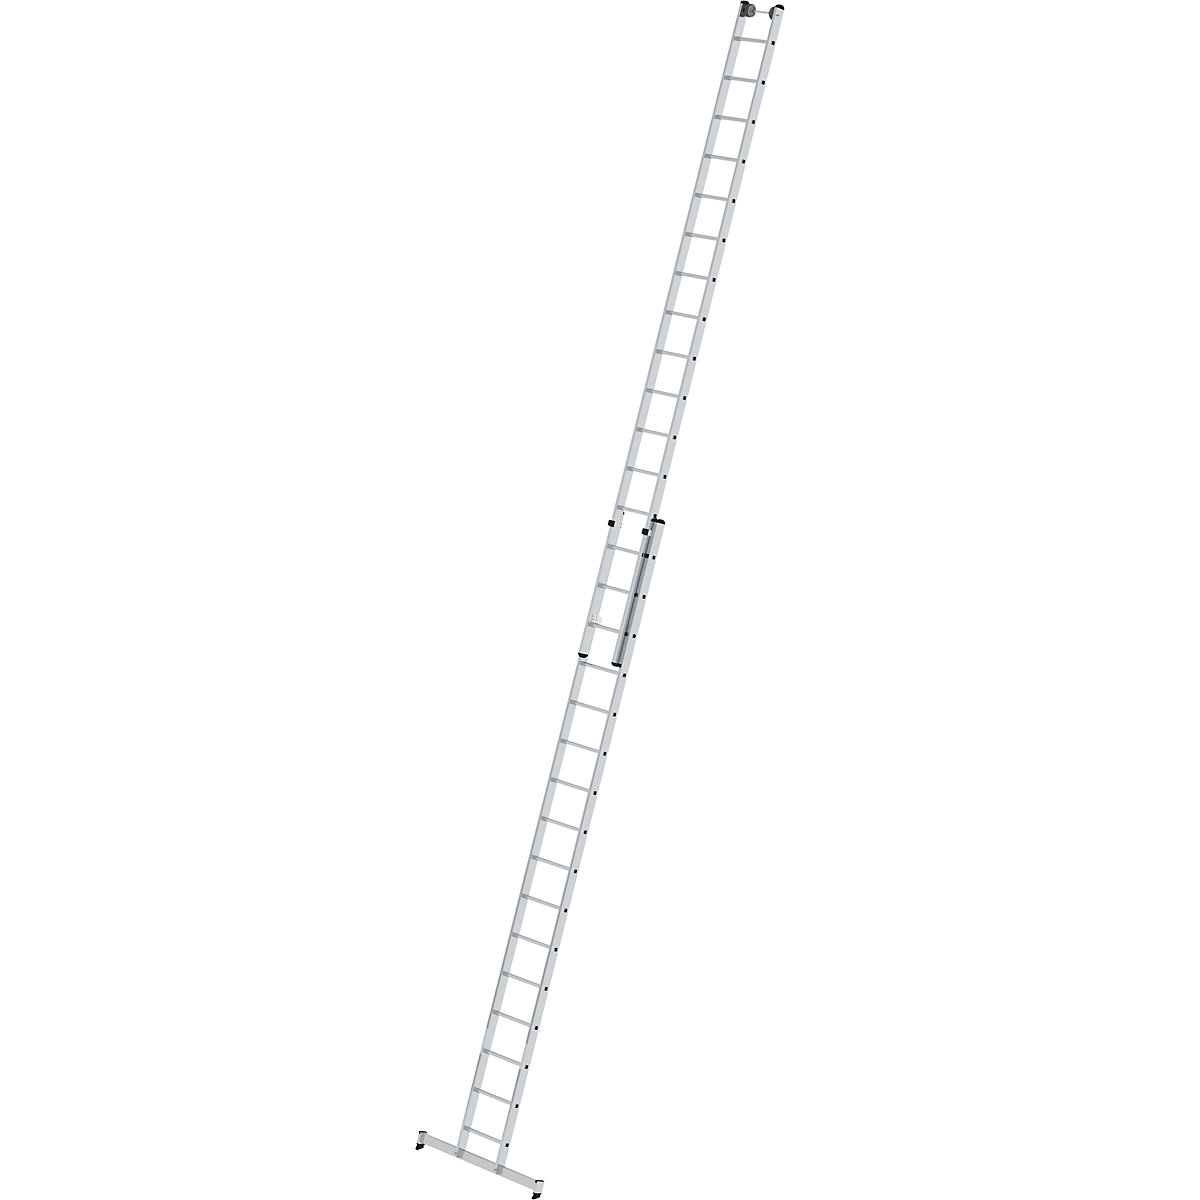 Výškově přestavitelný opěrný žebřík – MUNK, posuvný žebřík, 2dílný, 2 x 16 příčlí, s příčníkem nivello®-6